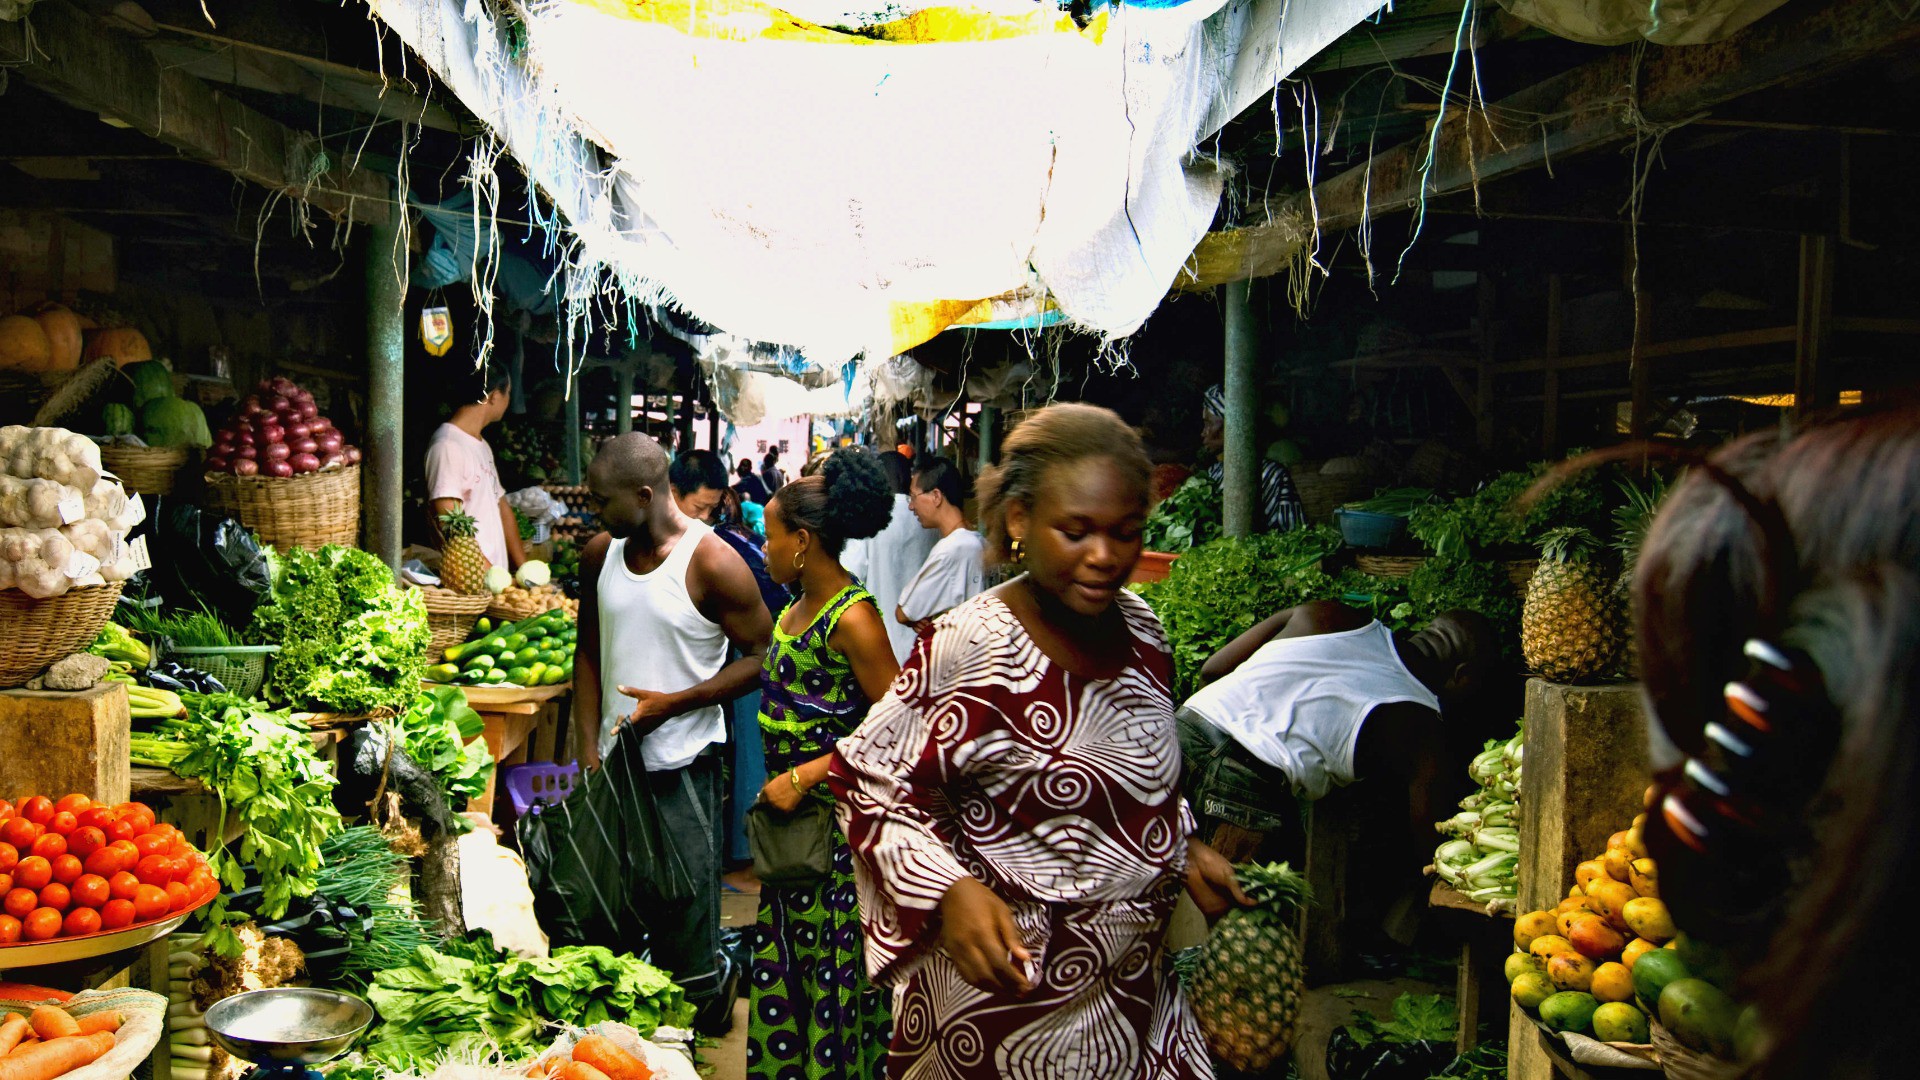 Les Nigérians éliront leurs autorités le 28 mars 2015 (Photo: Shawnlelshman/Flickr/CC BY-SA 2.0)